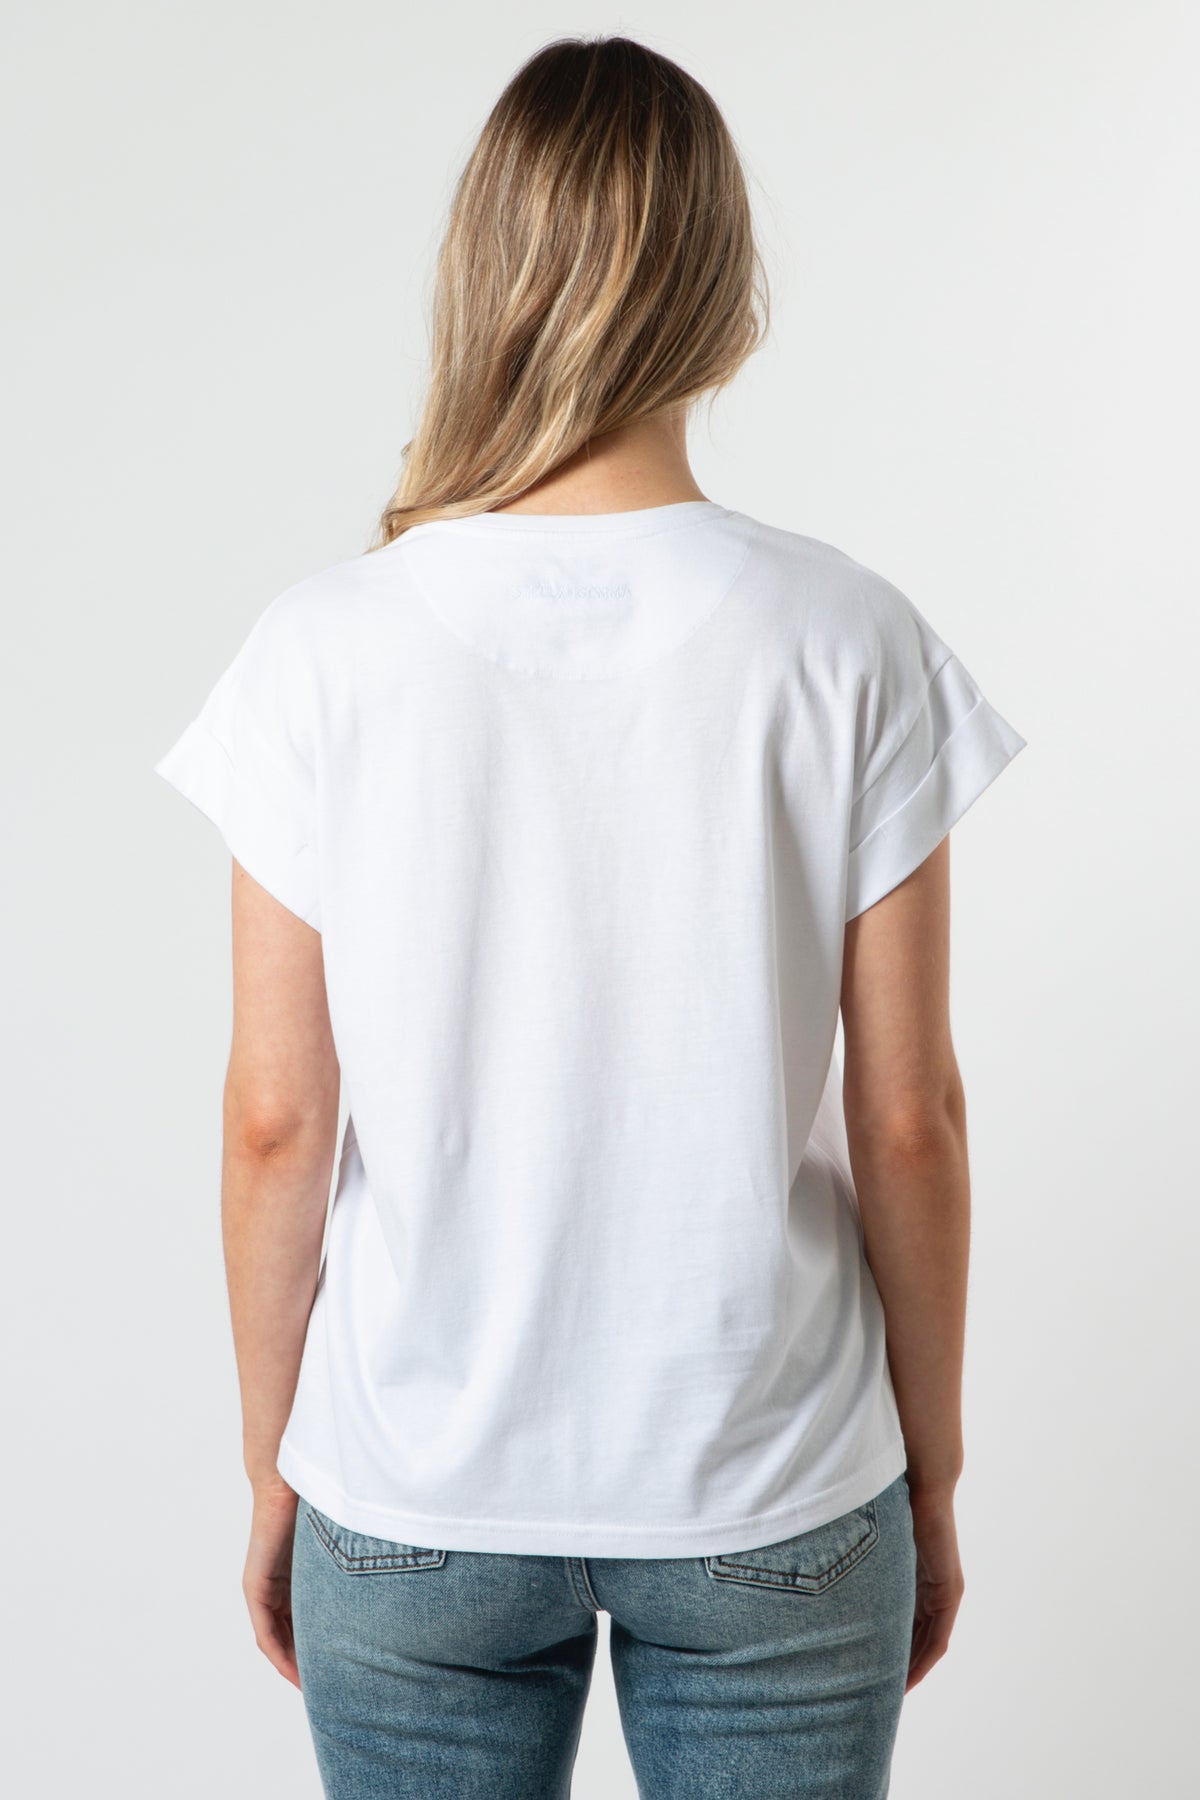 Cuff Sleeve T-Shirt White California